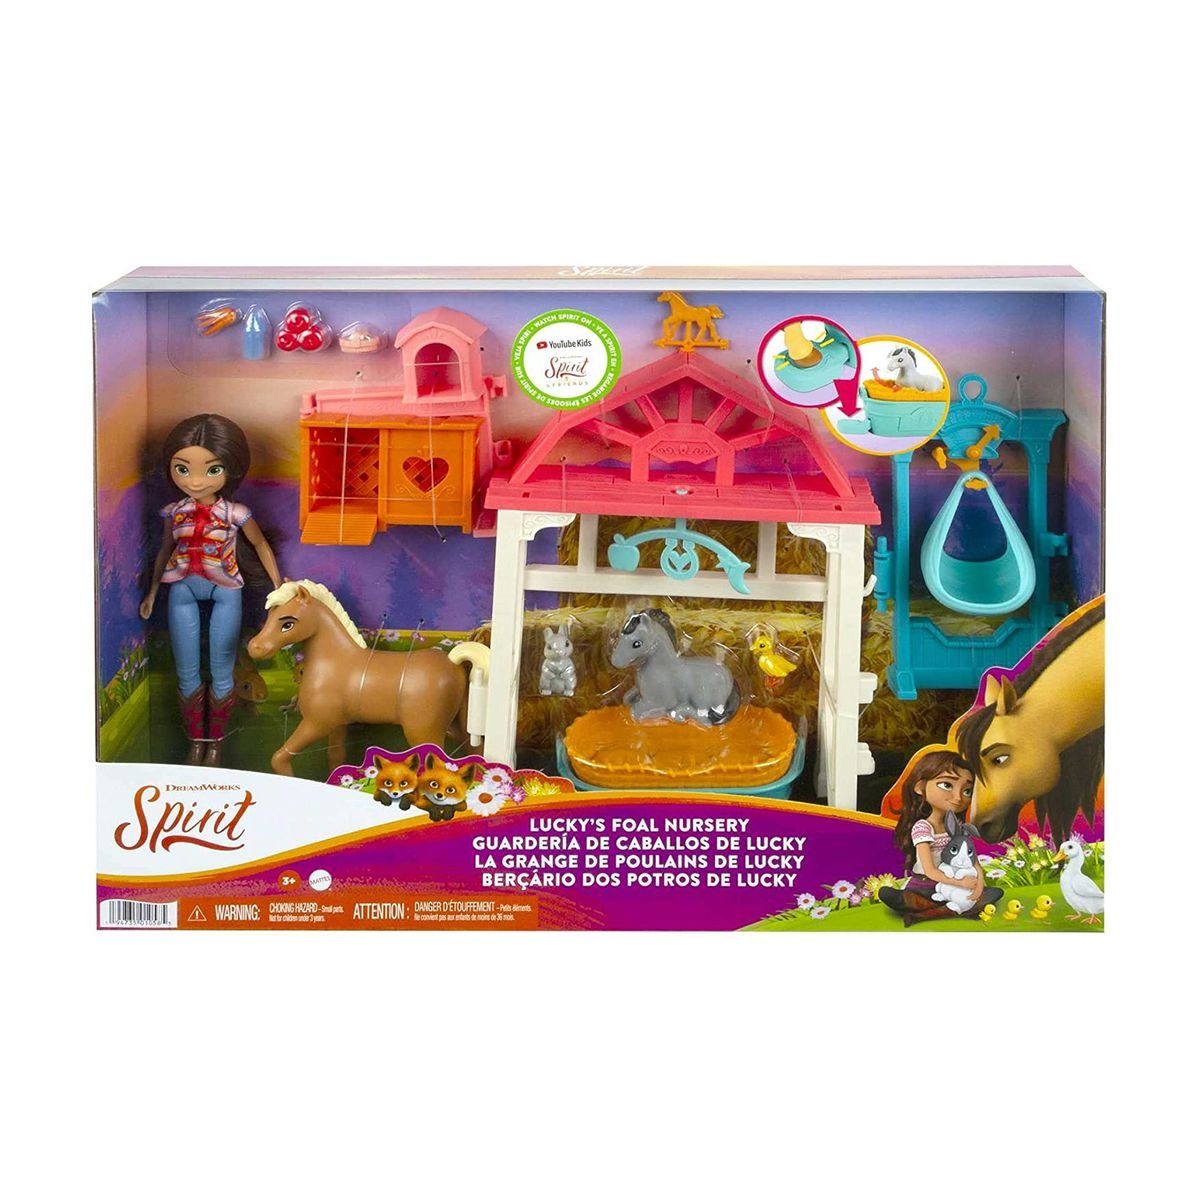 Mattel® Spielwelt Mattel HCH37 - DreamWorks - Spirit - Spielset, Puppe mit Zubehör, Luckys Tierbaby-Pflegestation